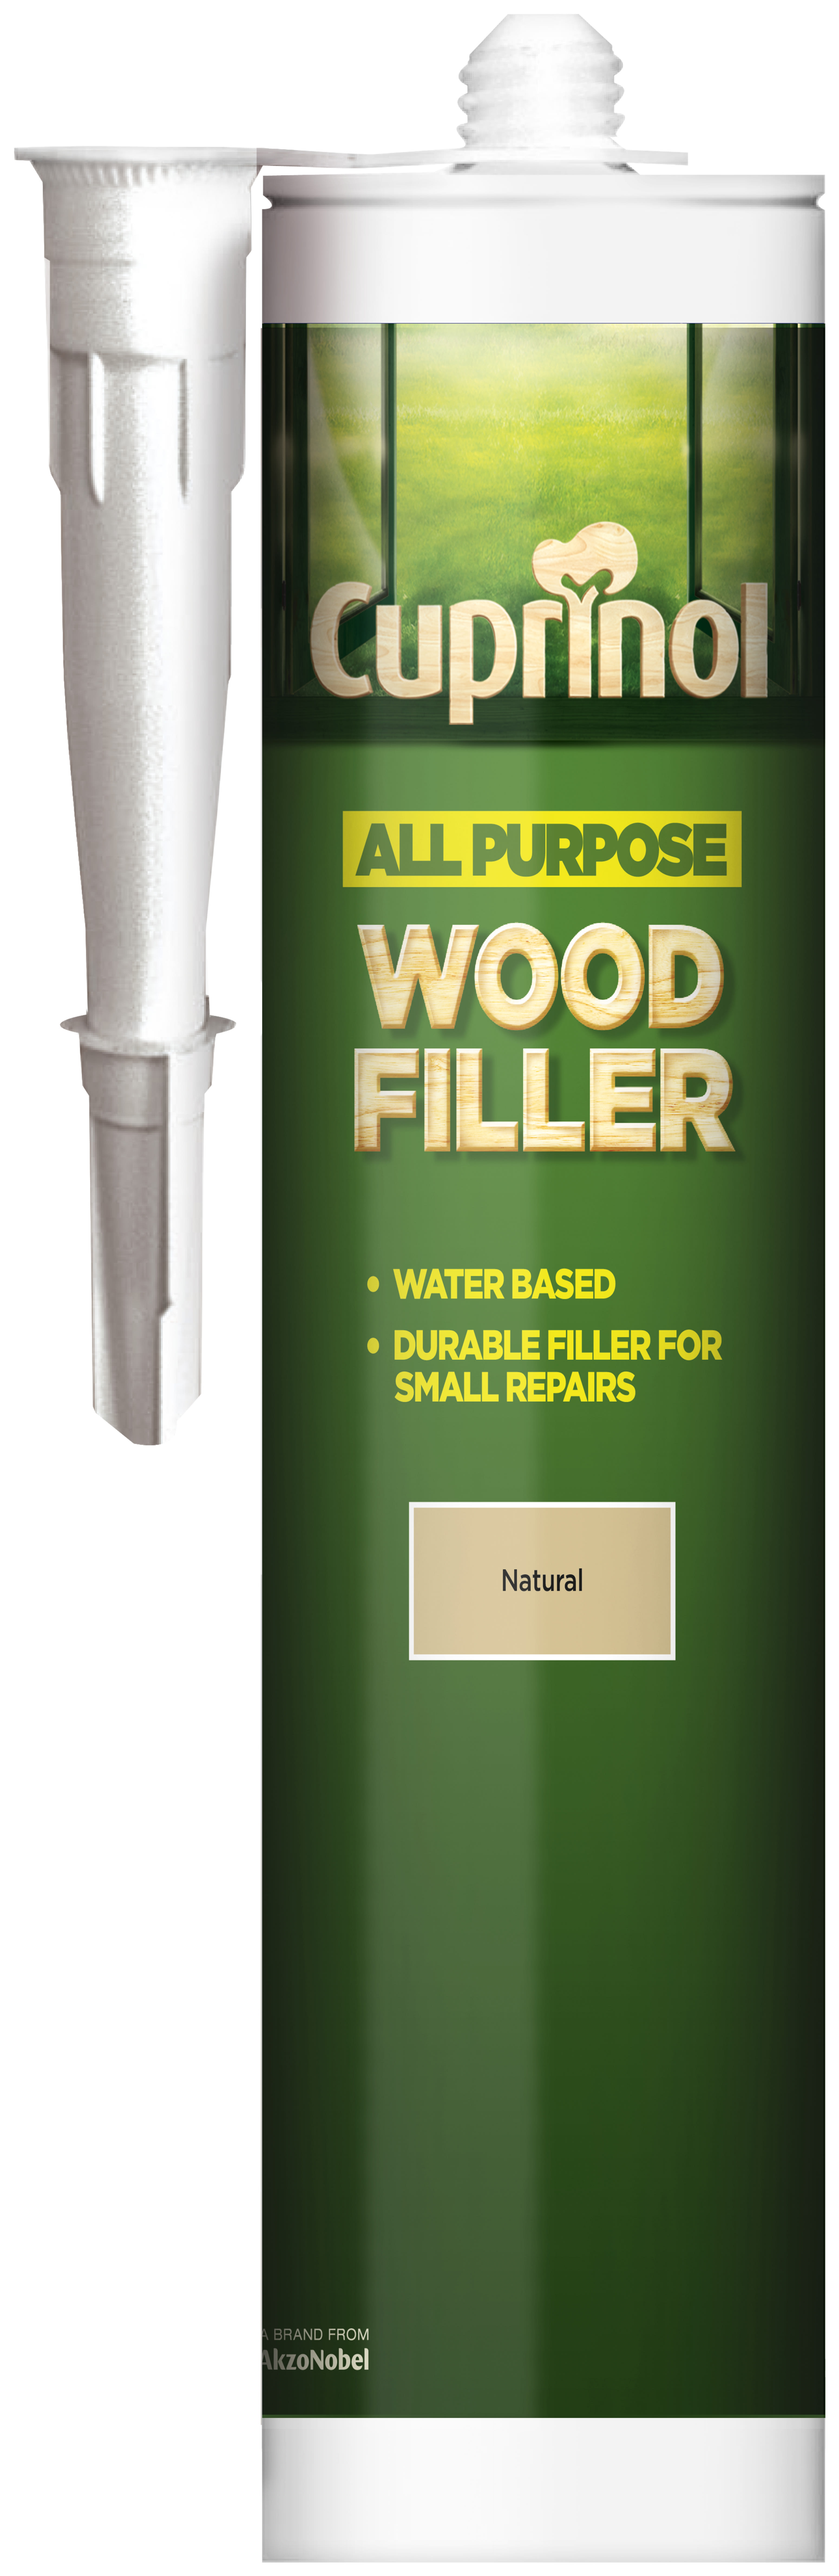 Cuprinol All Purpose Wood Filler - Natural 310ml